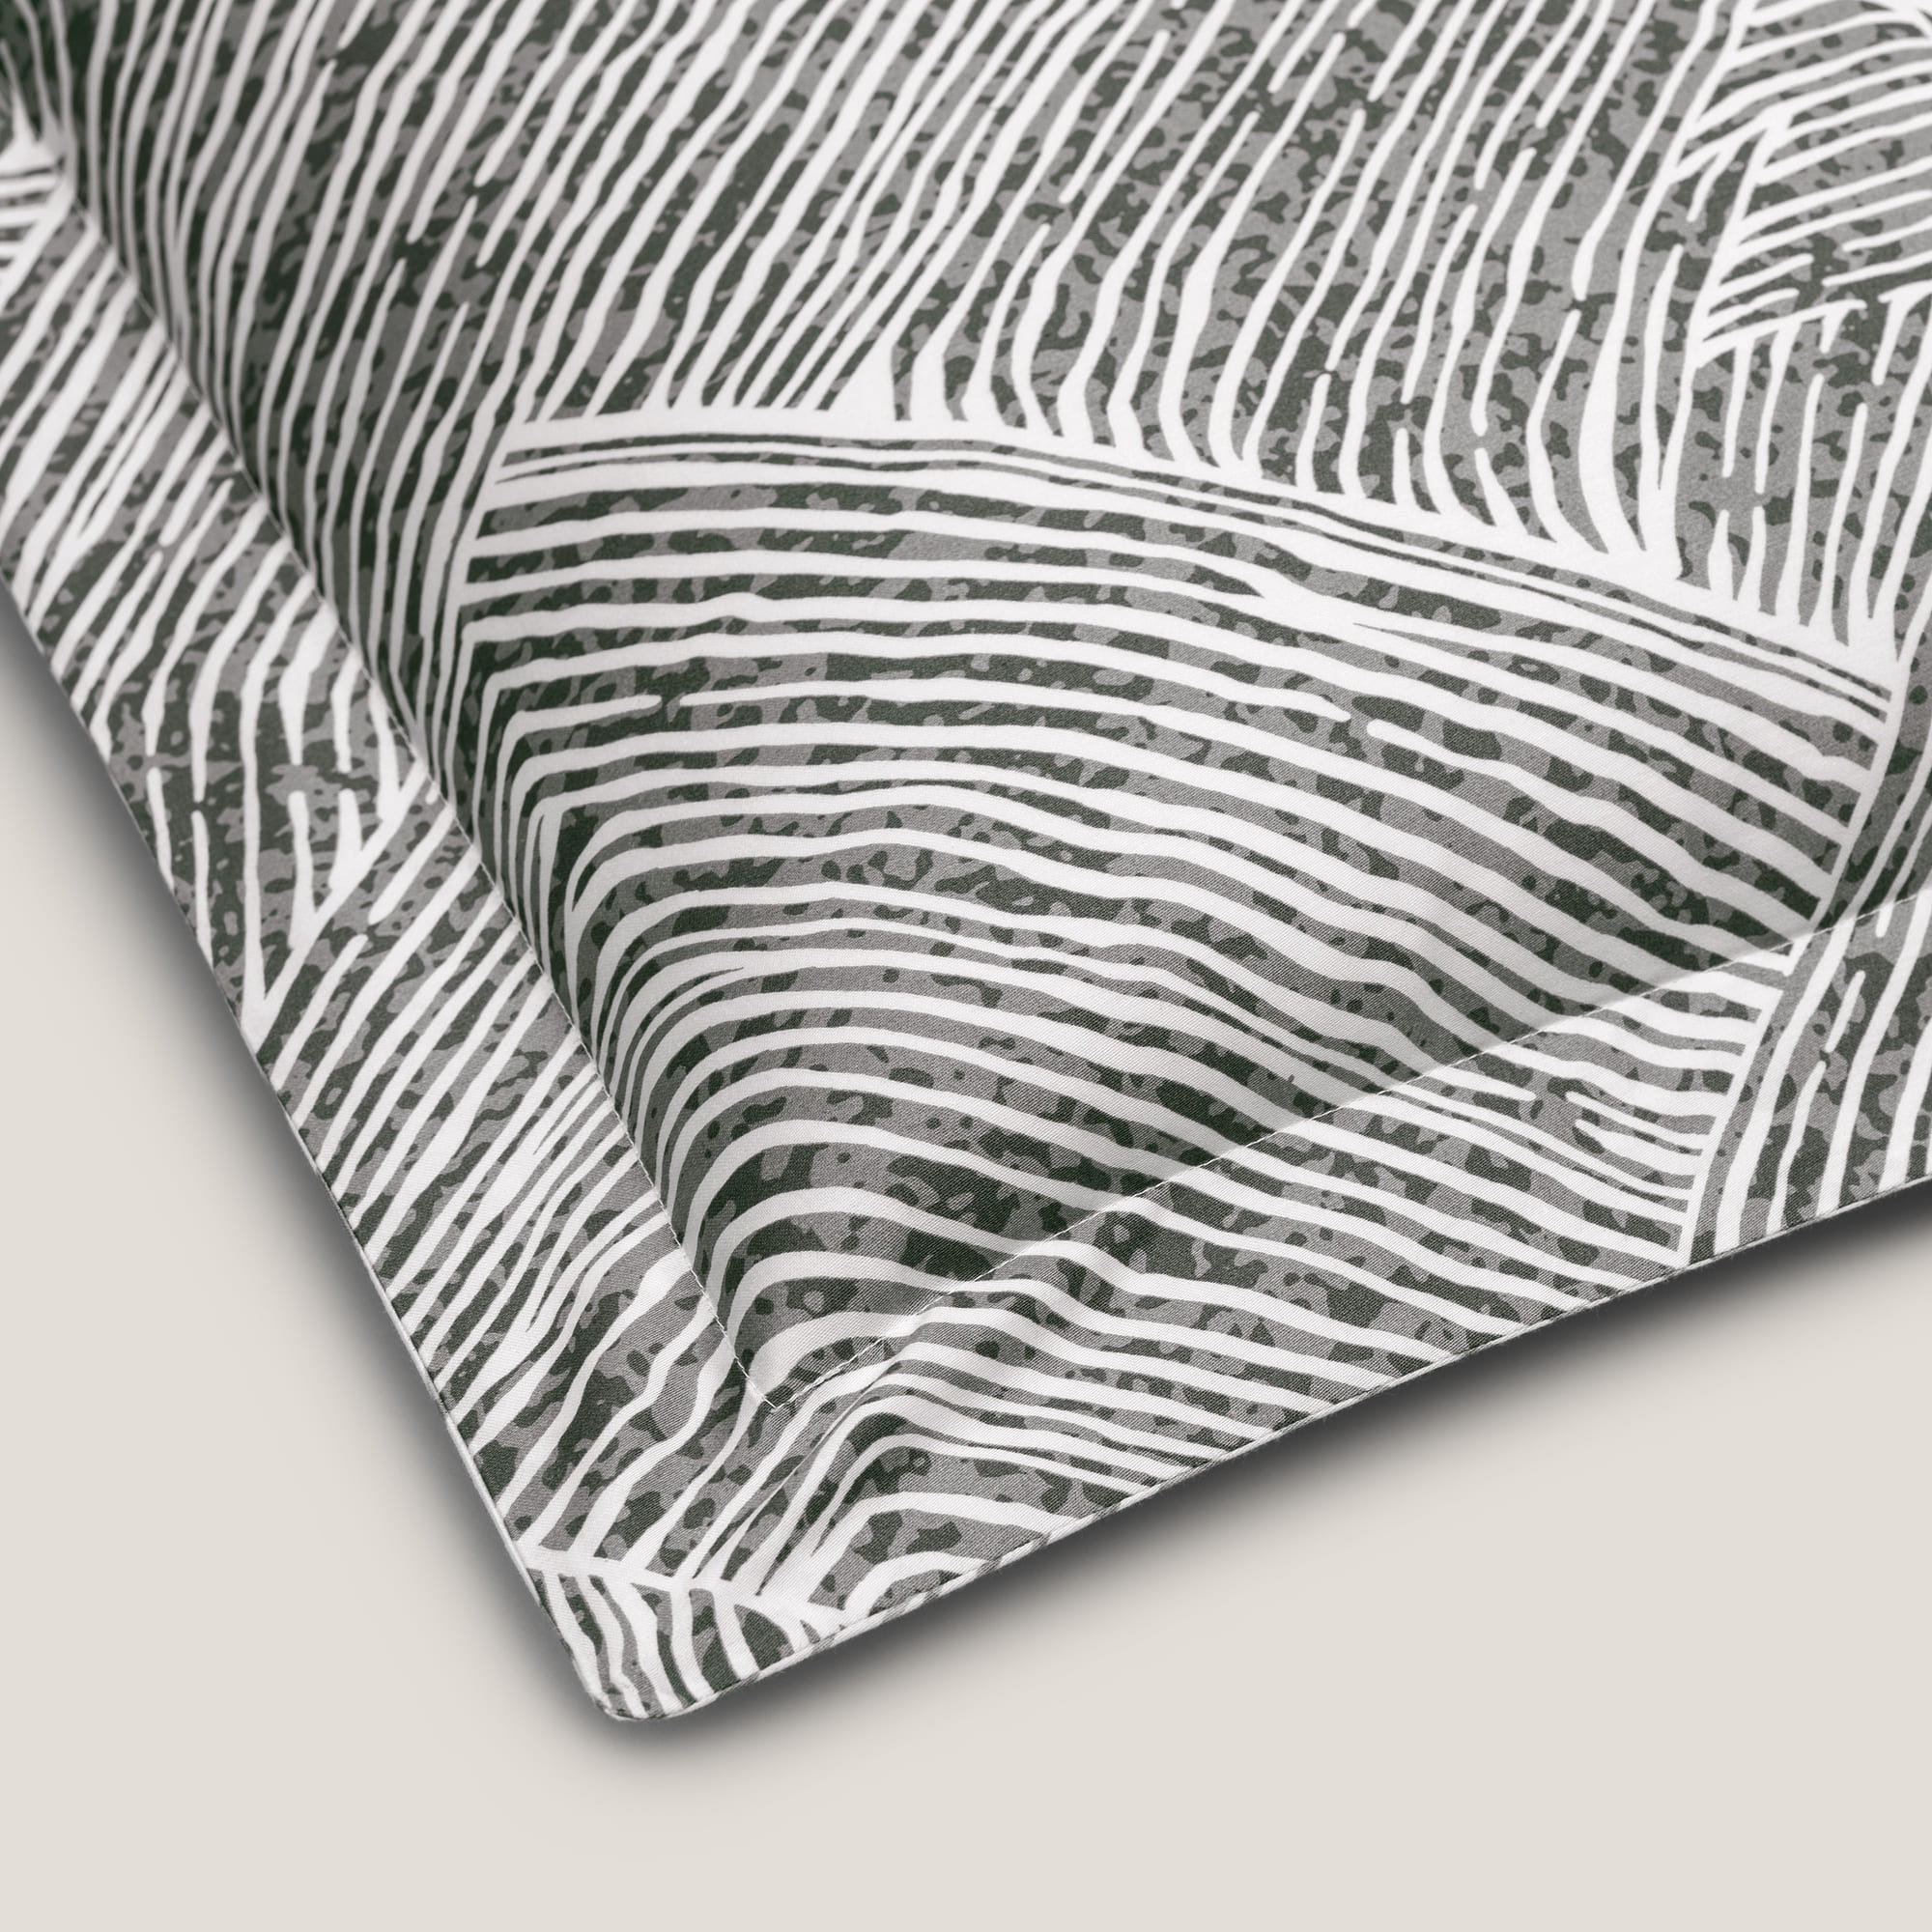 Комплект постельного белья Togas Ферранте серый Двуспальный кинг сайз, размер Кинг сайз - фото 8